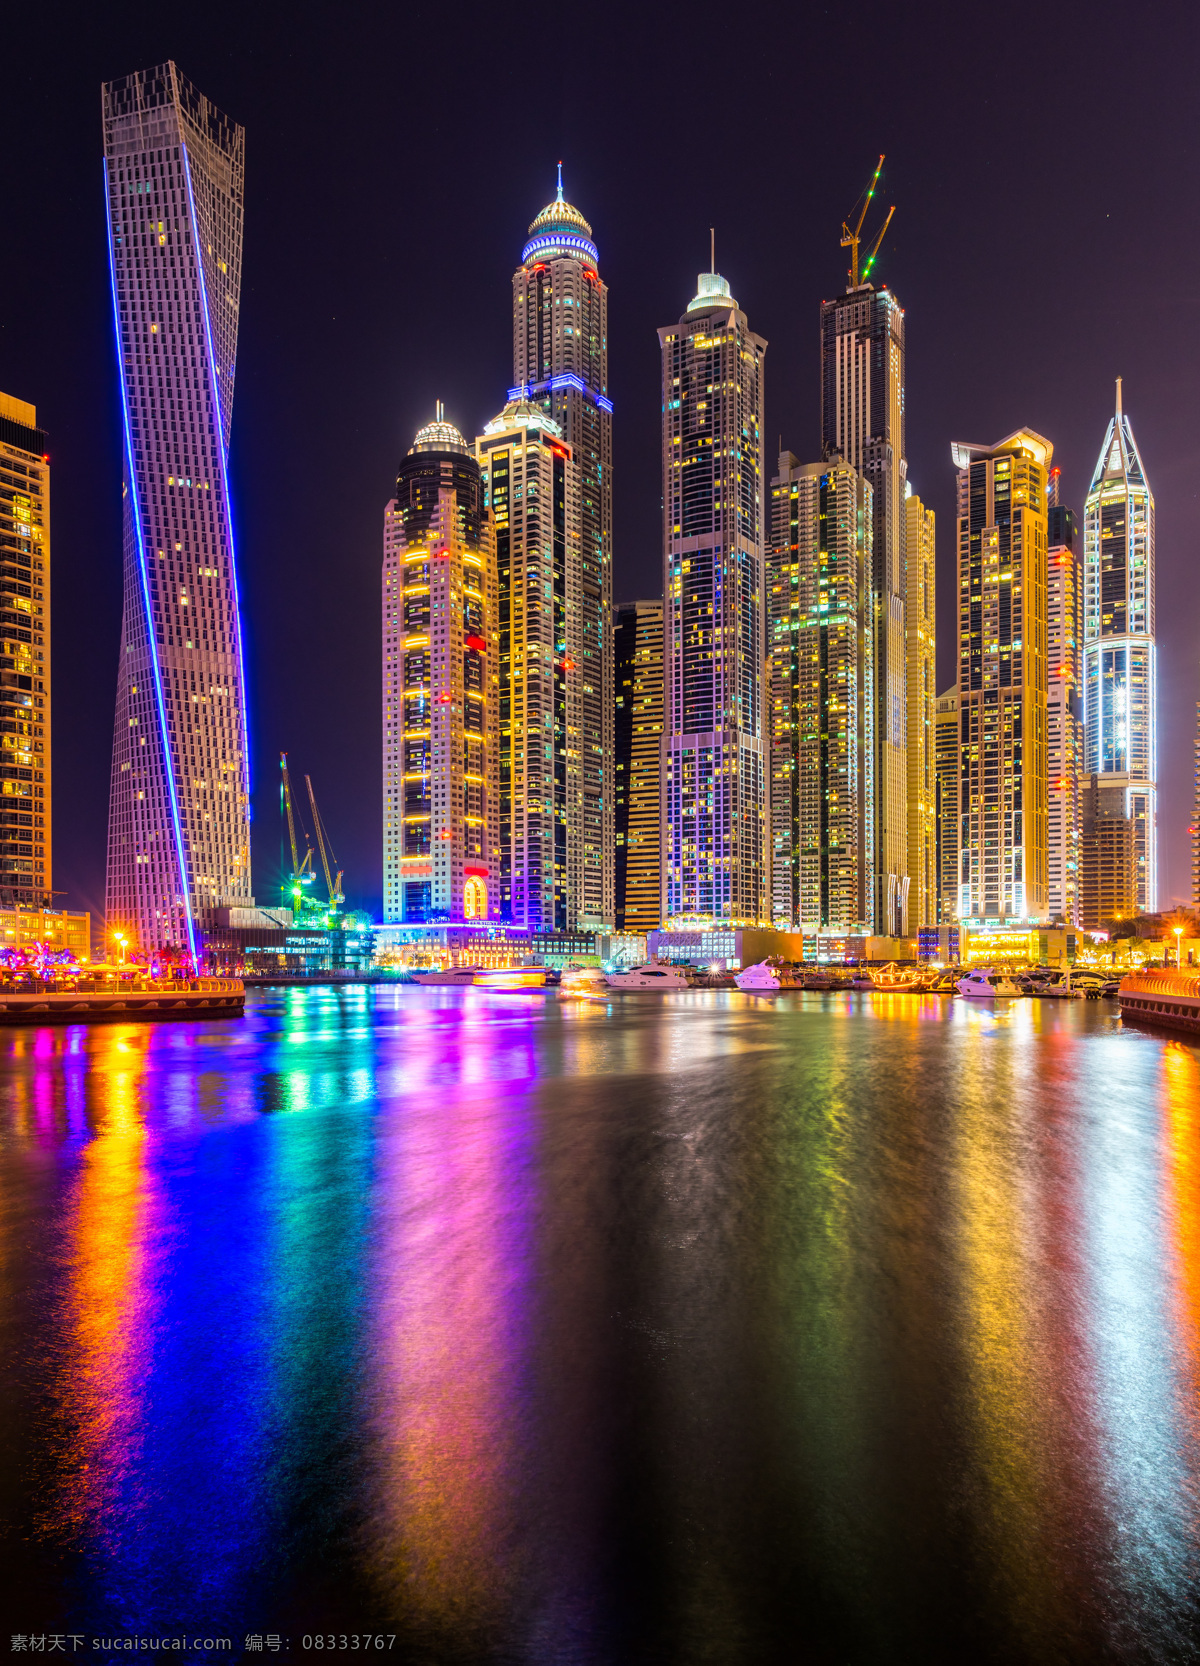 迪拜 城市 建筑 楼房 高楼 大厦 著名城市 都市 海边 海滩 海水浴场 壮观 摩天楼 摩天大楼 景观 旅游胜地 美景 风光 风景 世界著名建筑 国外旅游摄影 国外旅游 旅游摄影